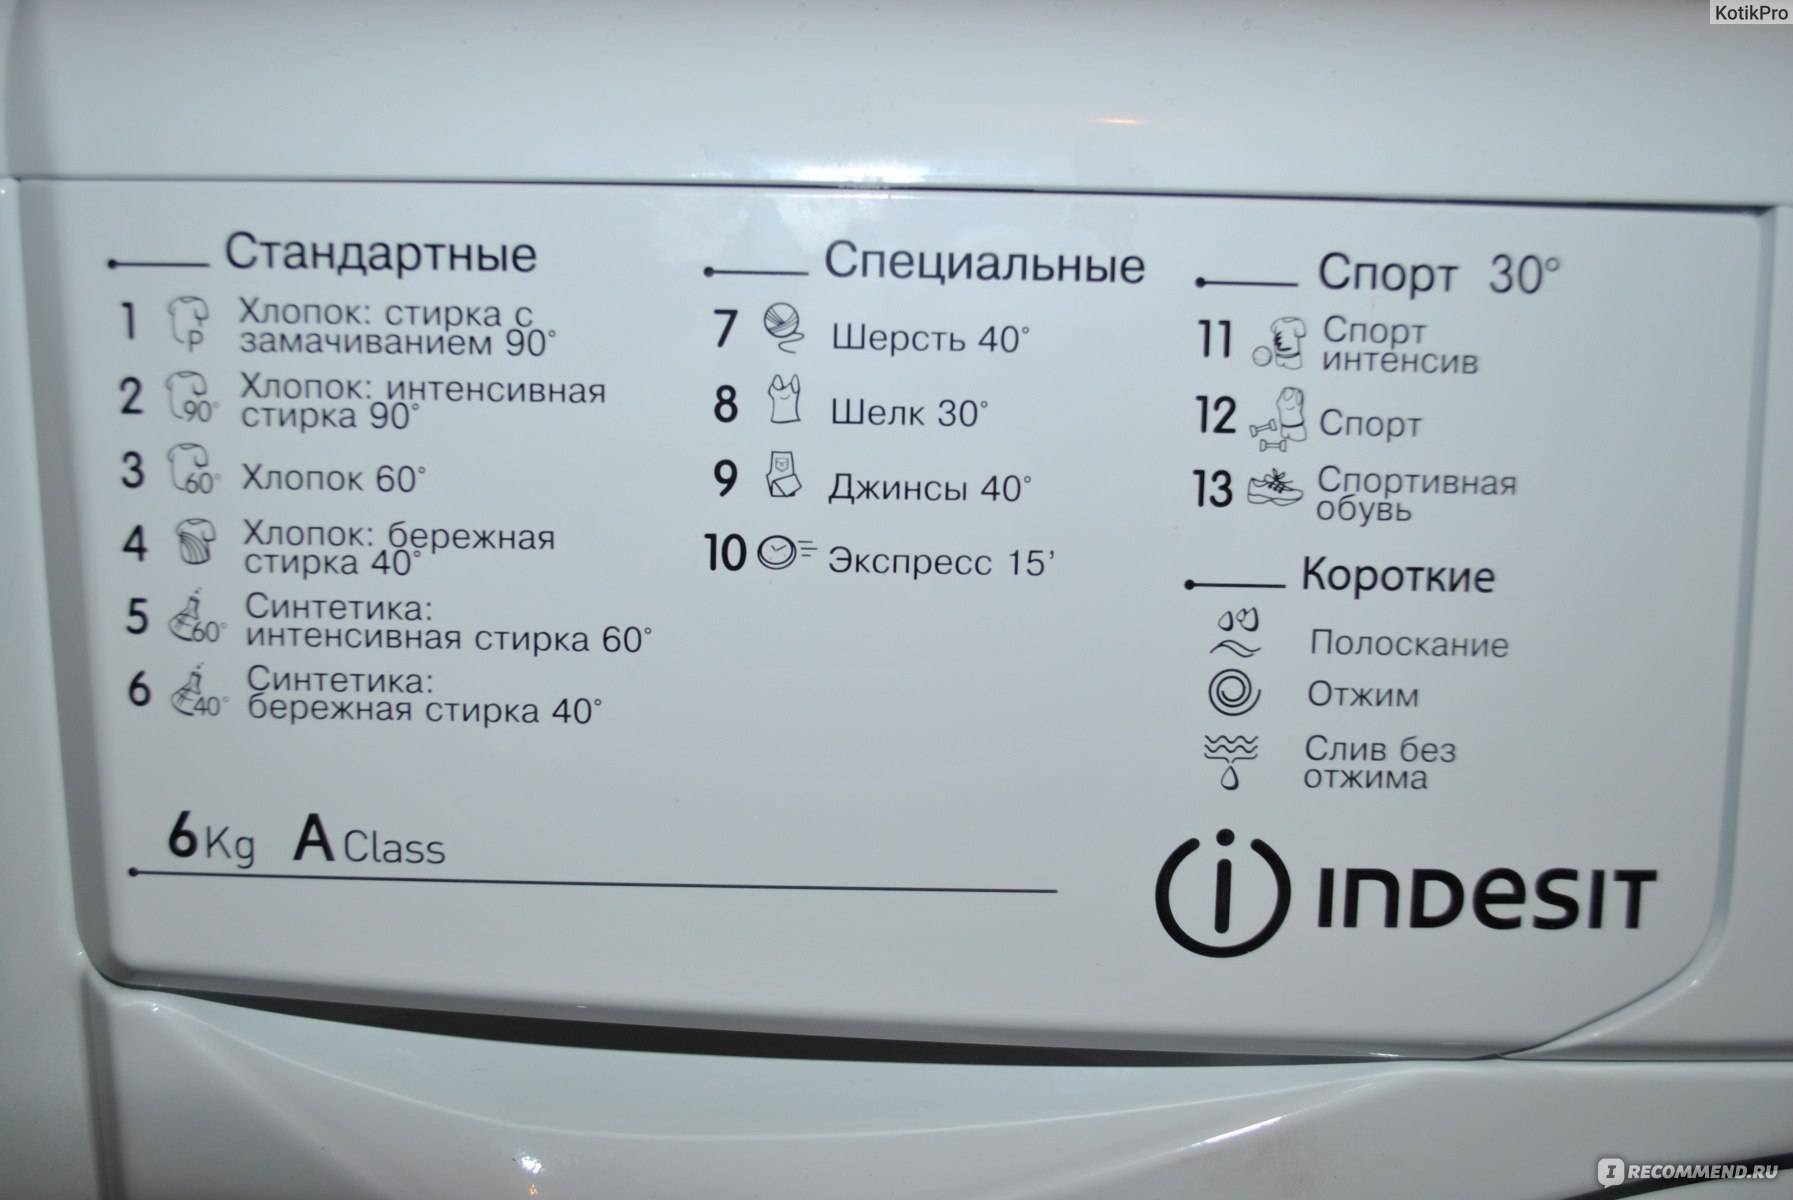 Сколько можно стирать в стиральной машине. Индезит стиральная машинка режимы стирки. Индезит стиральная машина режимы 6105. Машинка Индезит функция отжима. Экспресс стирка 15 Индезит.